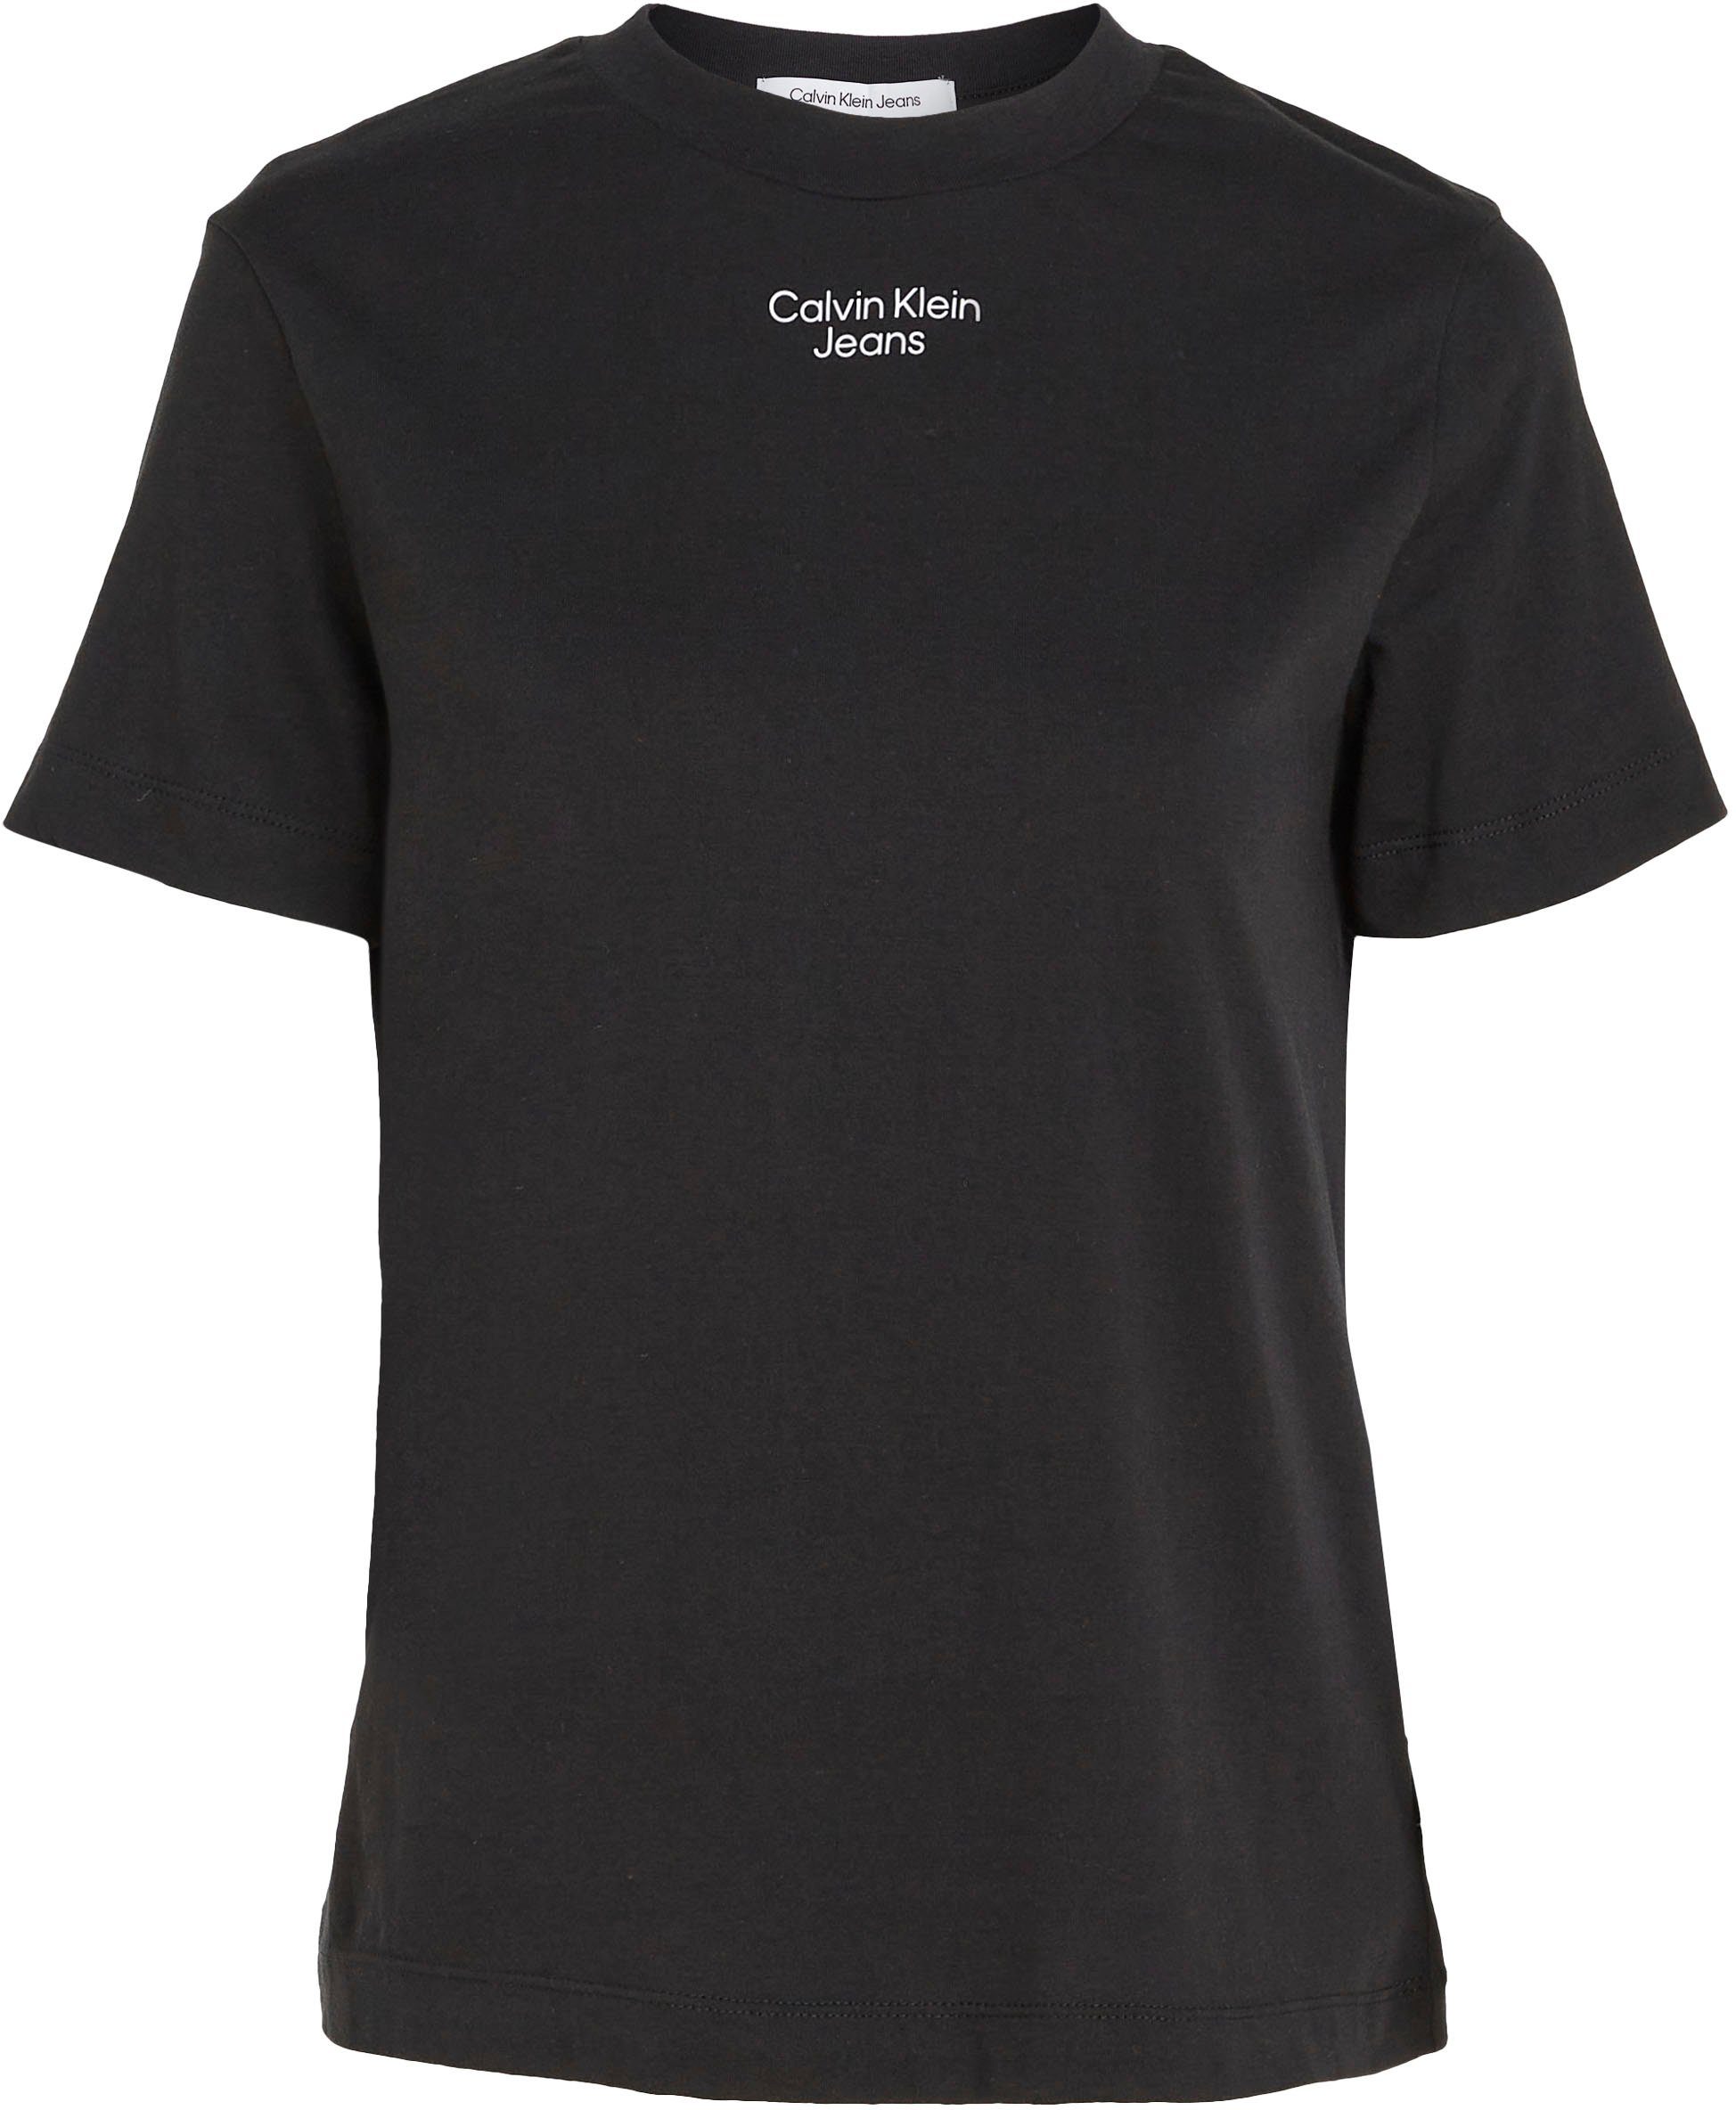 Jeans TEE STRAIGHT Ck T-Shirt mit STACKED Calvin LOGO Klein MODERN Black Calvin dezentem Logodruck Jeans Klein